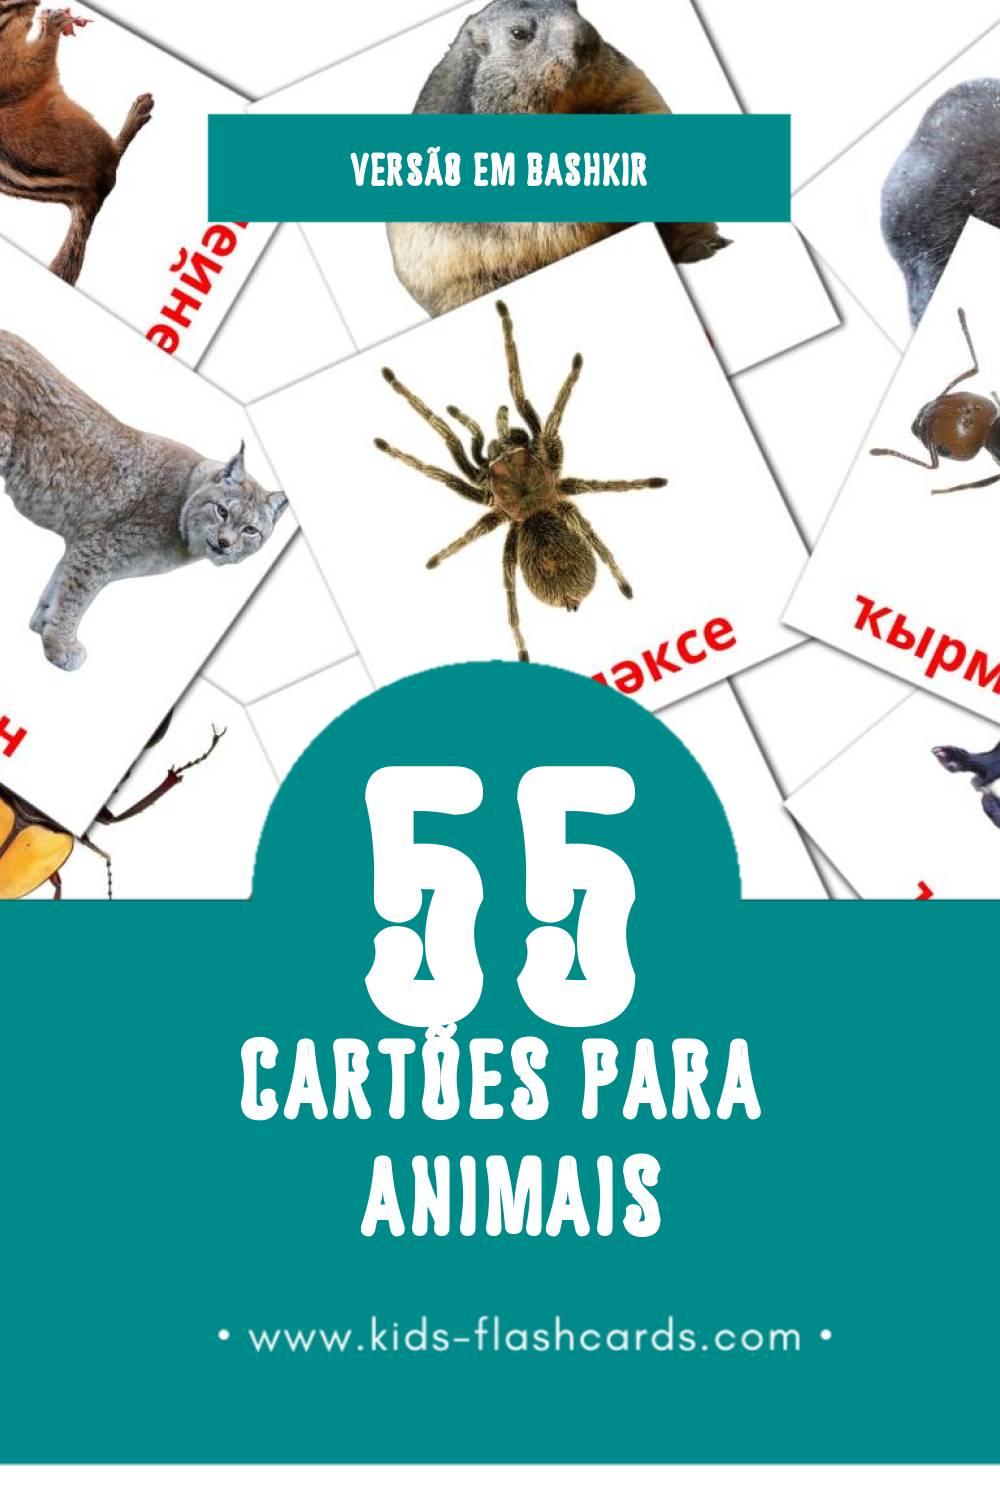 Flashcards de Животни Visuais para Toddlers (91 cartões em Bashkir)